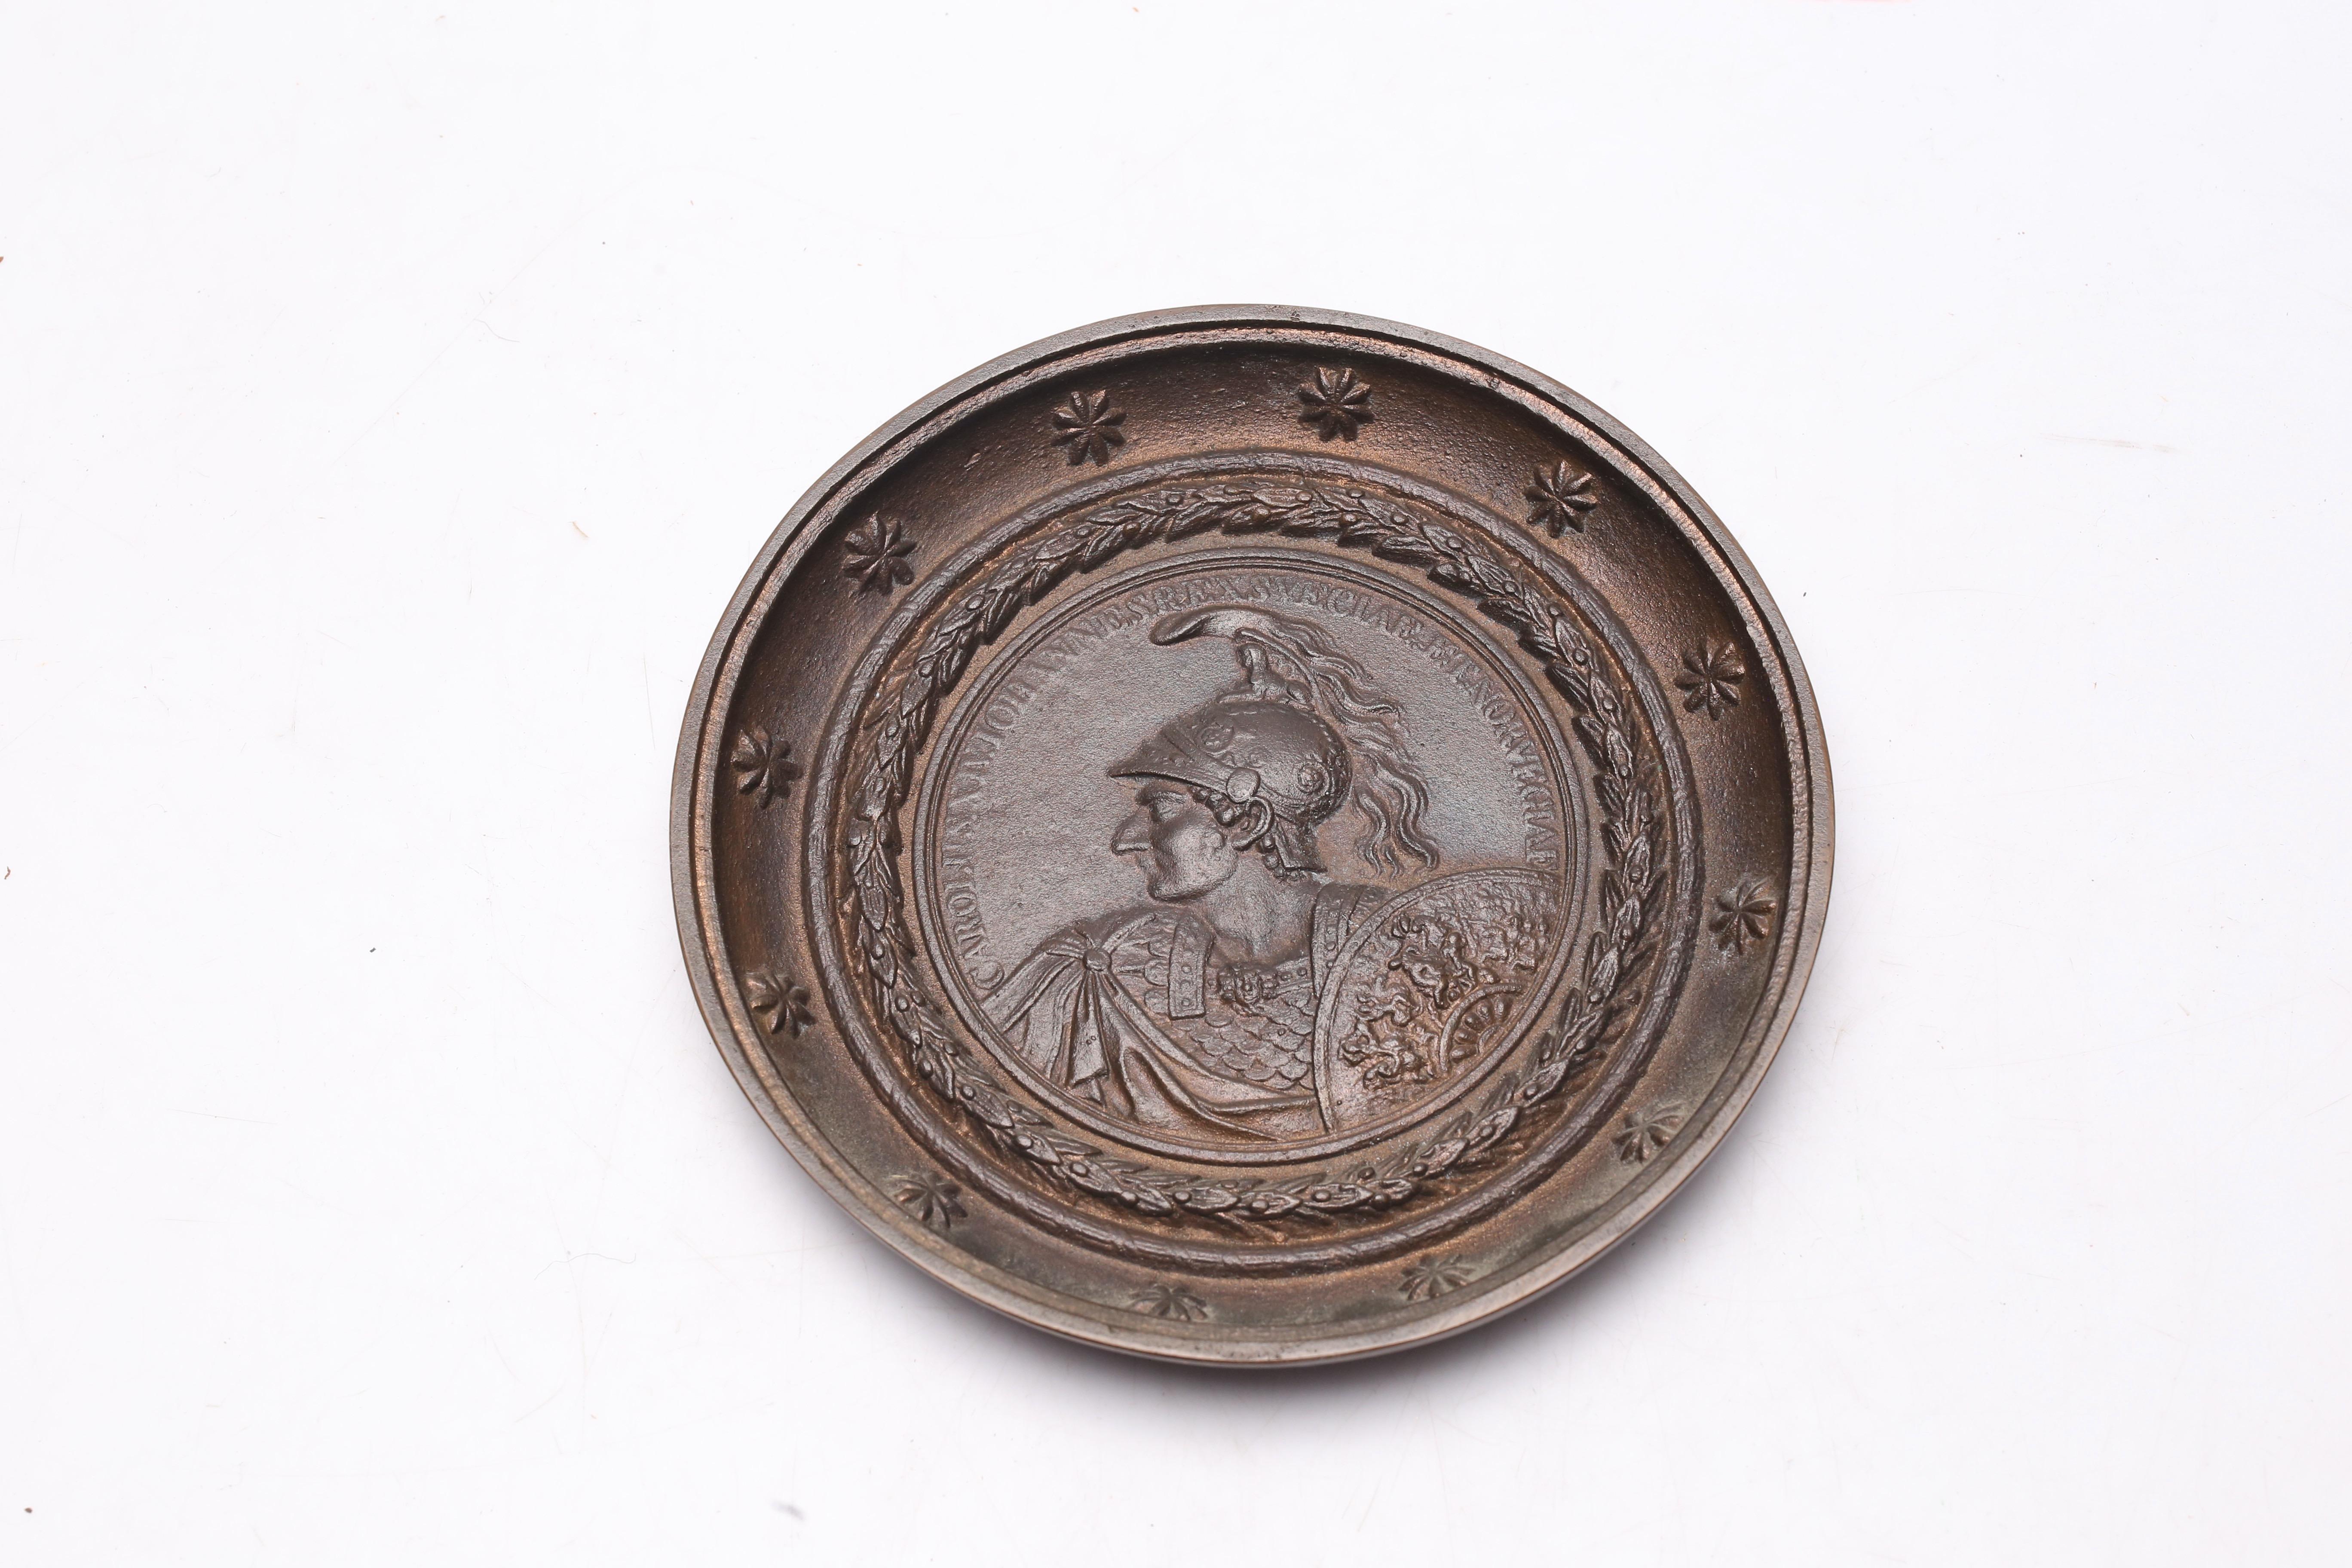 Belle plaque de médaille en fonte du roi Karl XIV Johan (1763-1844), époque empire.
Il s'agit d'un portrait en relief de Karl XIV Johan en général romain, avec le texte 